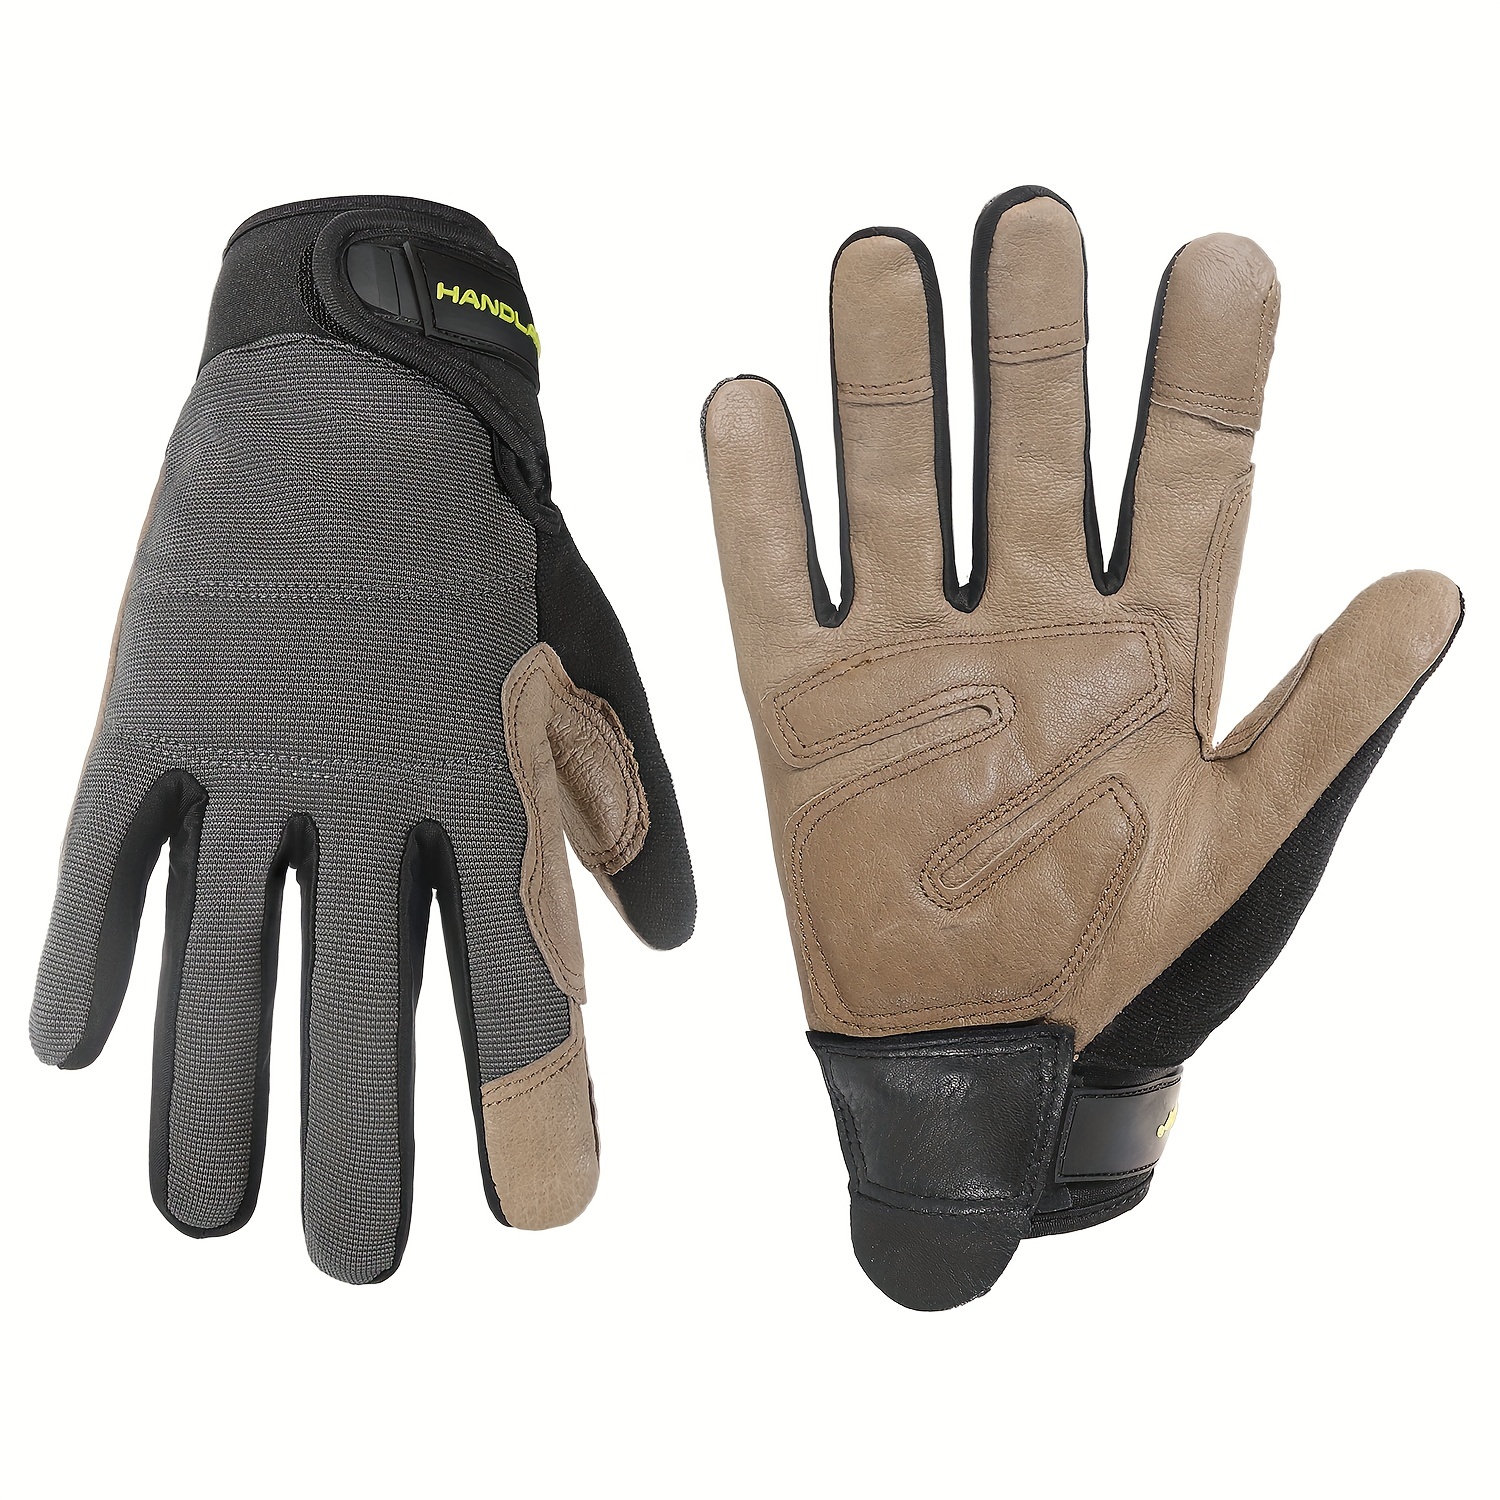 Los mejores guantes para la mecanica (para trabajar en los autos) 